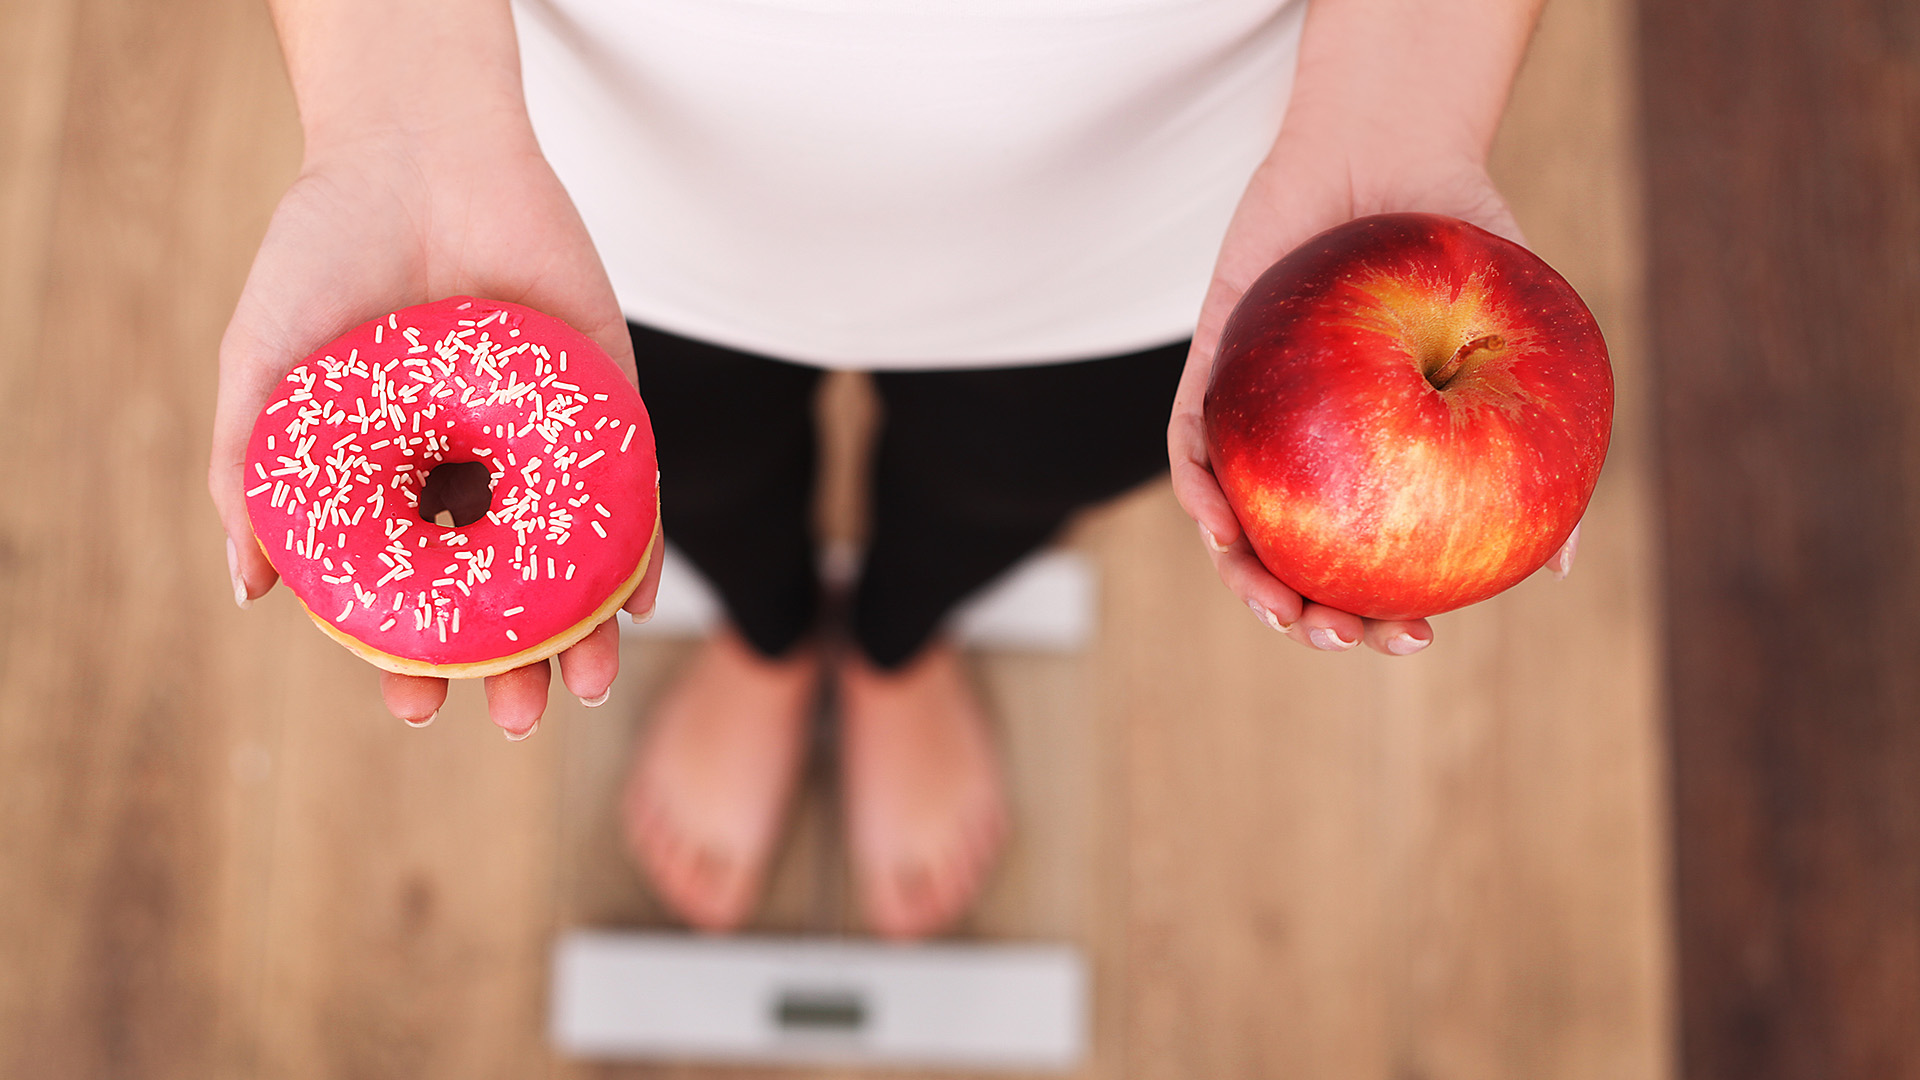 El alto consumo de azucar agrava la pandemia de la obesidad (Shutterstock)